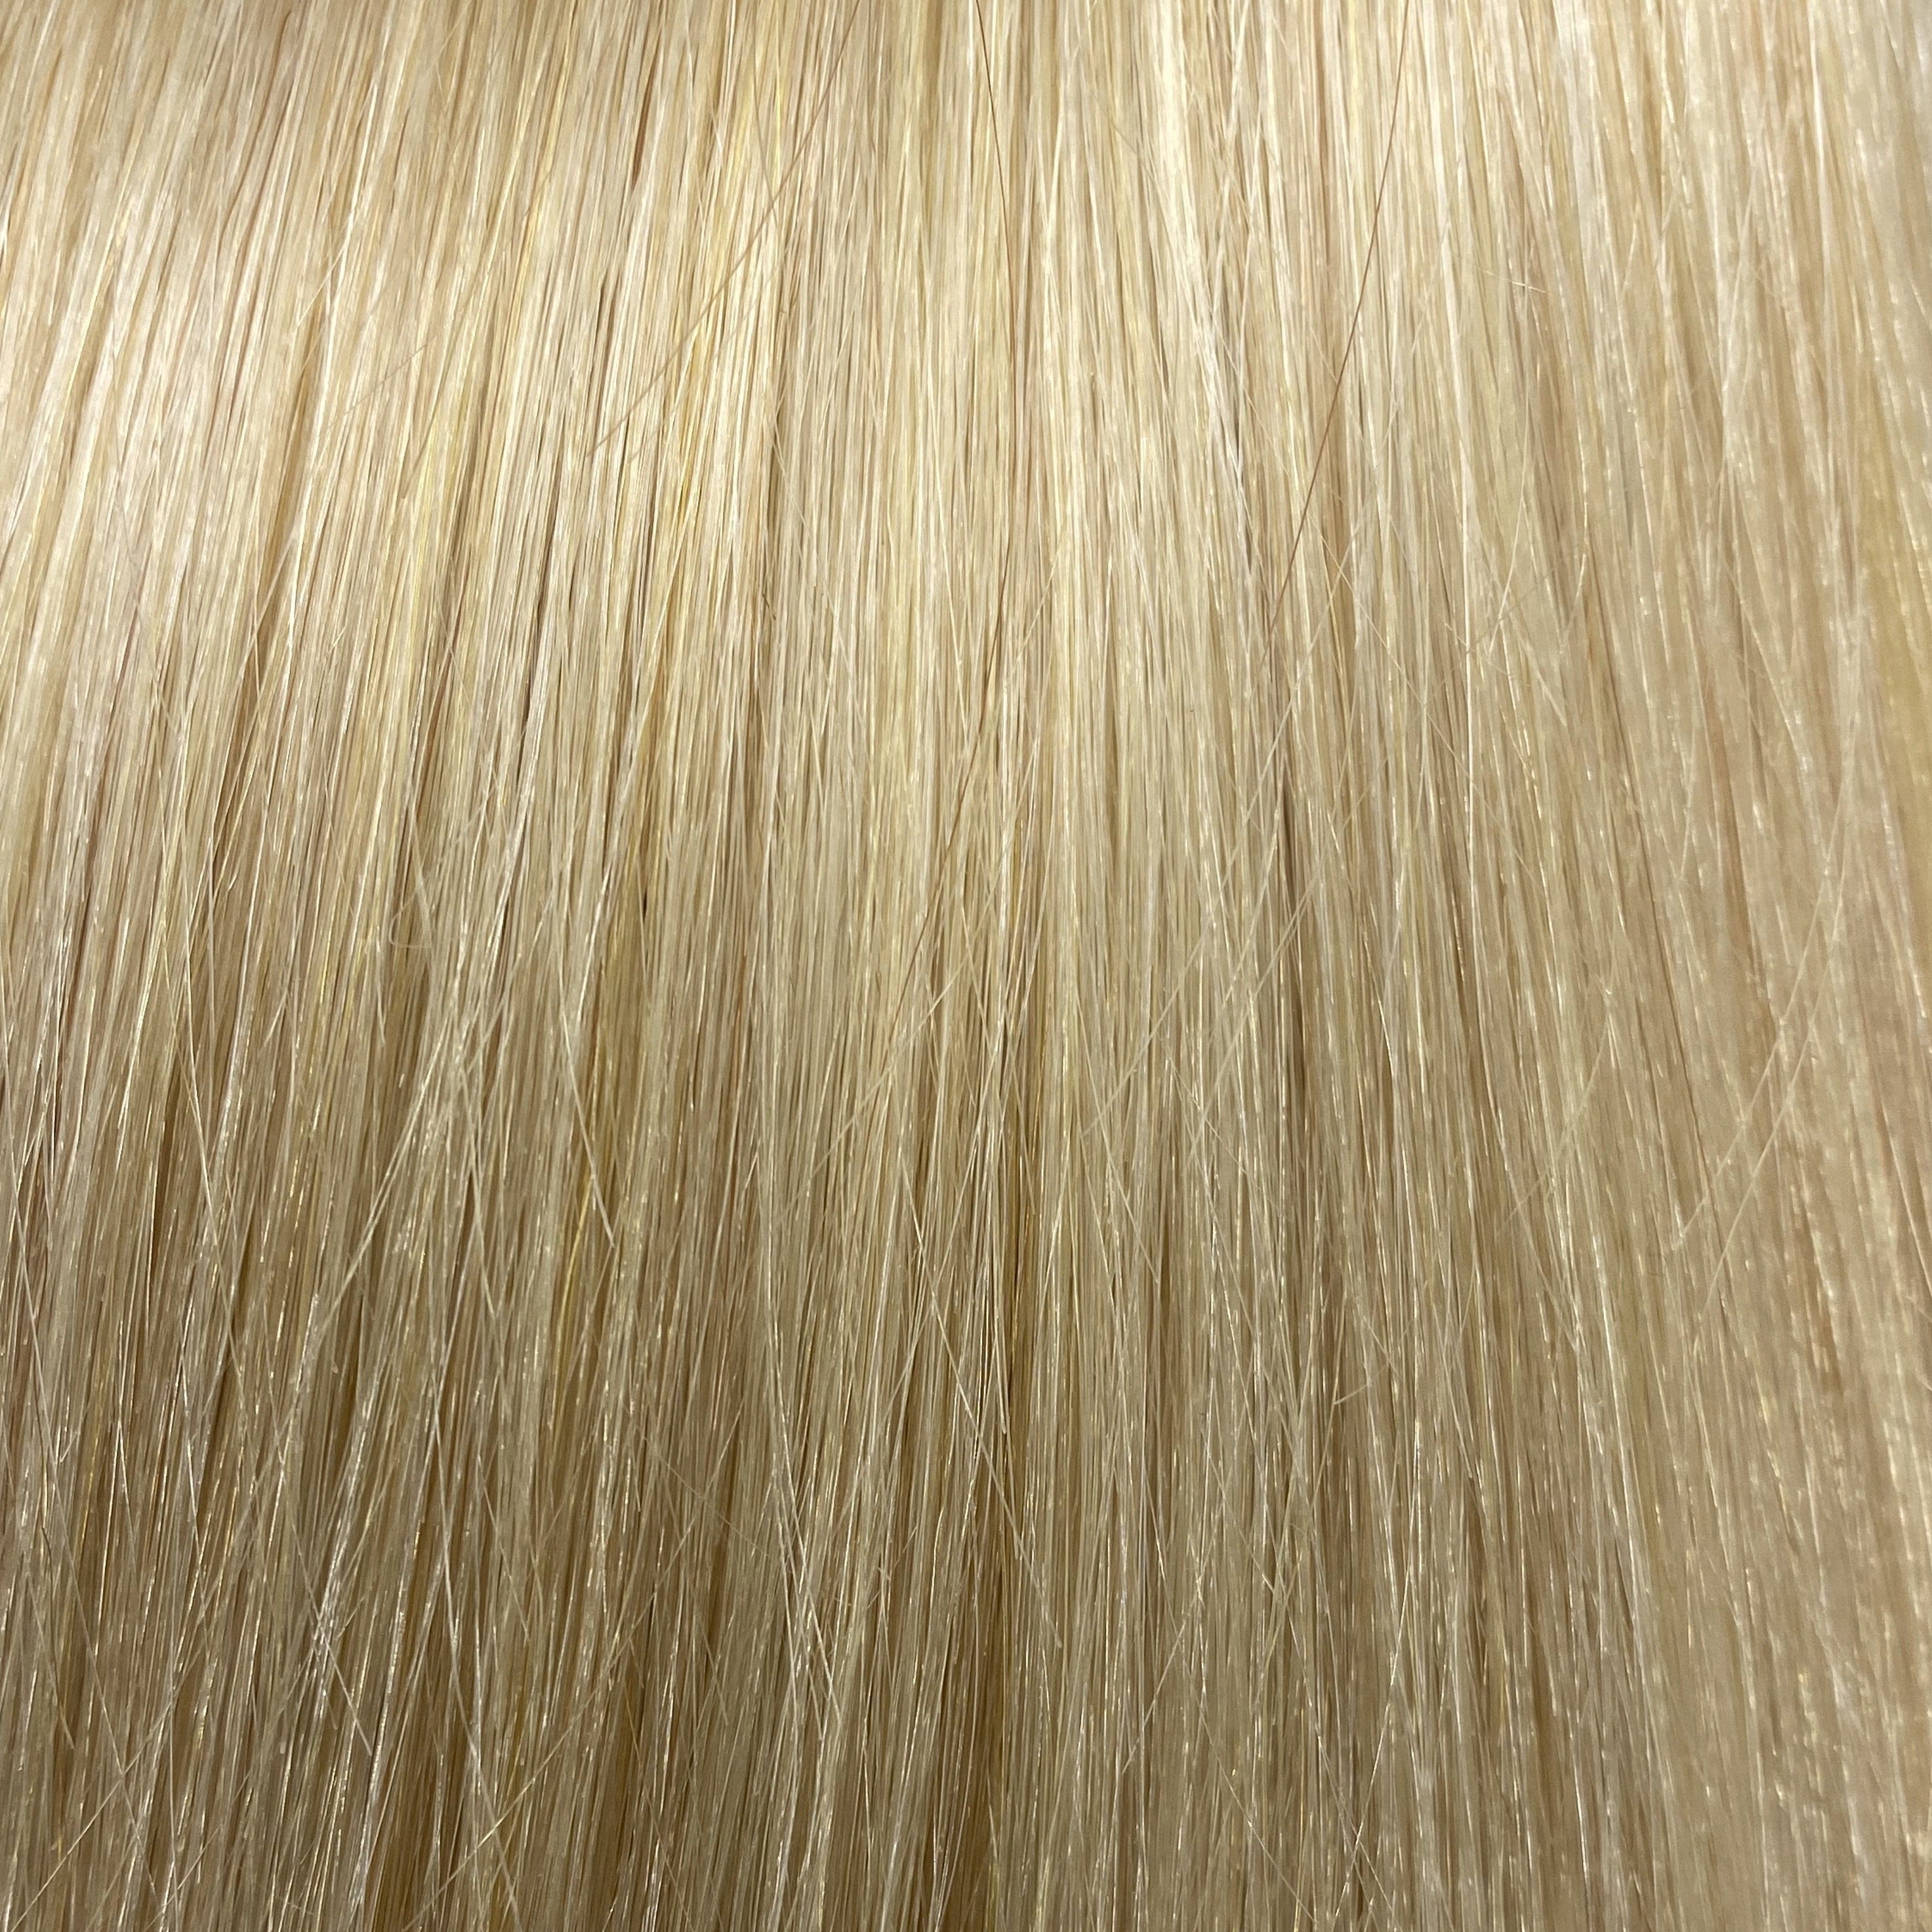 Velo Sale #22 - 16 inches - Platinum Blonde